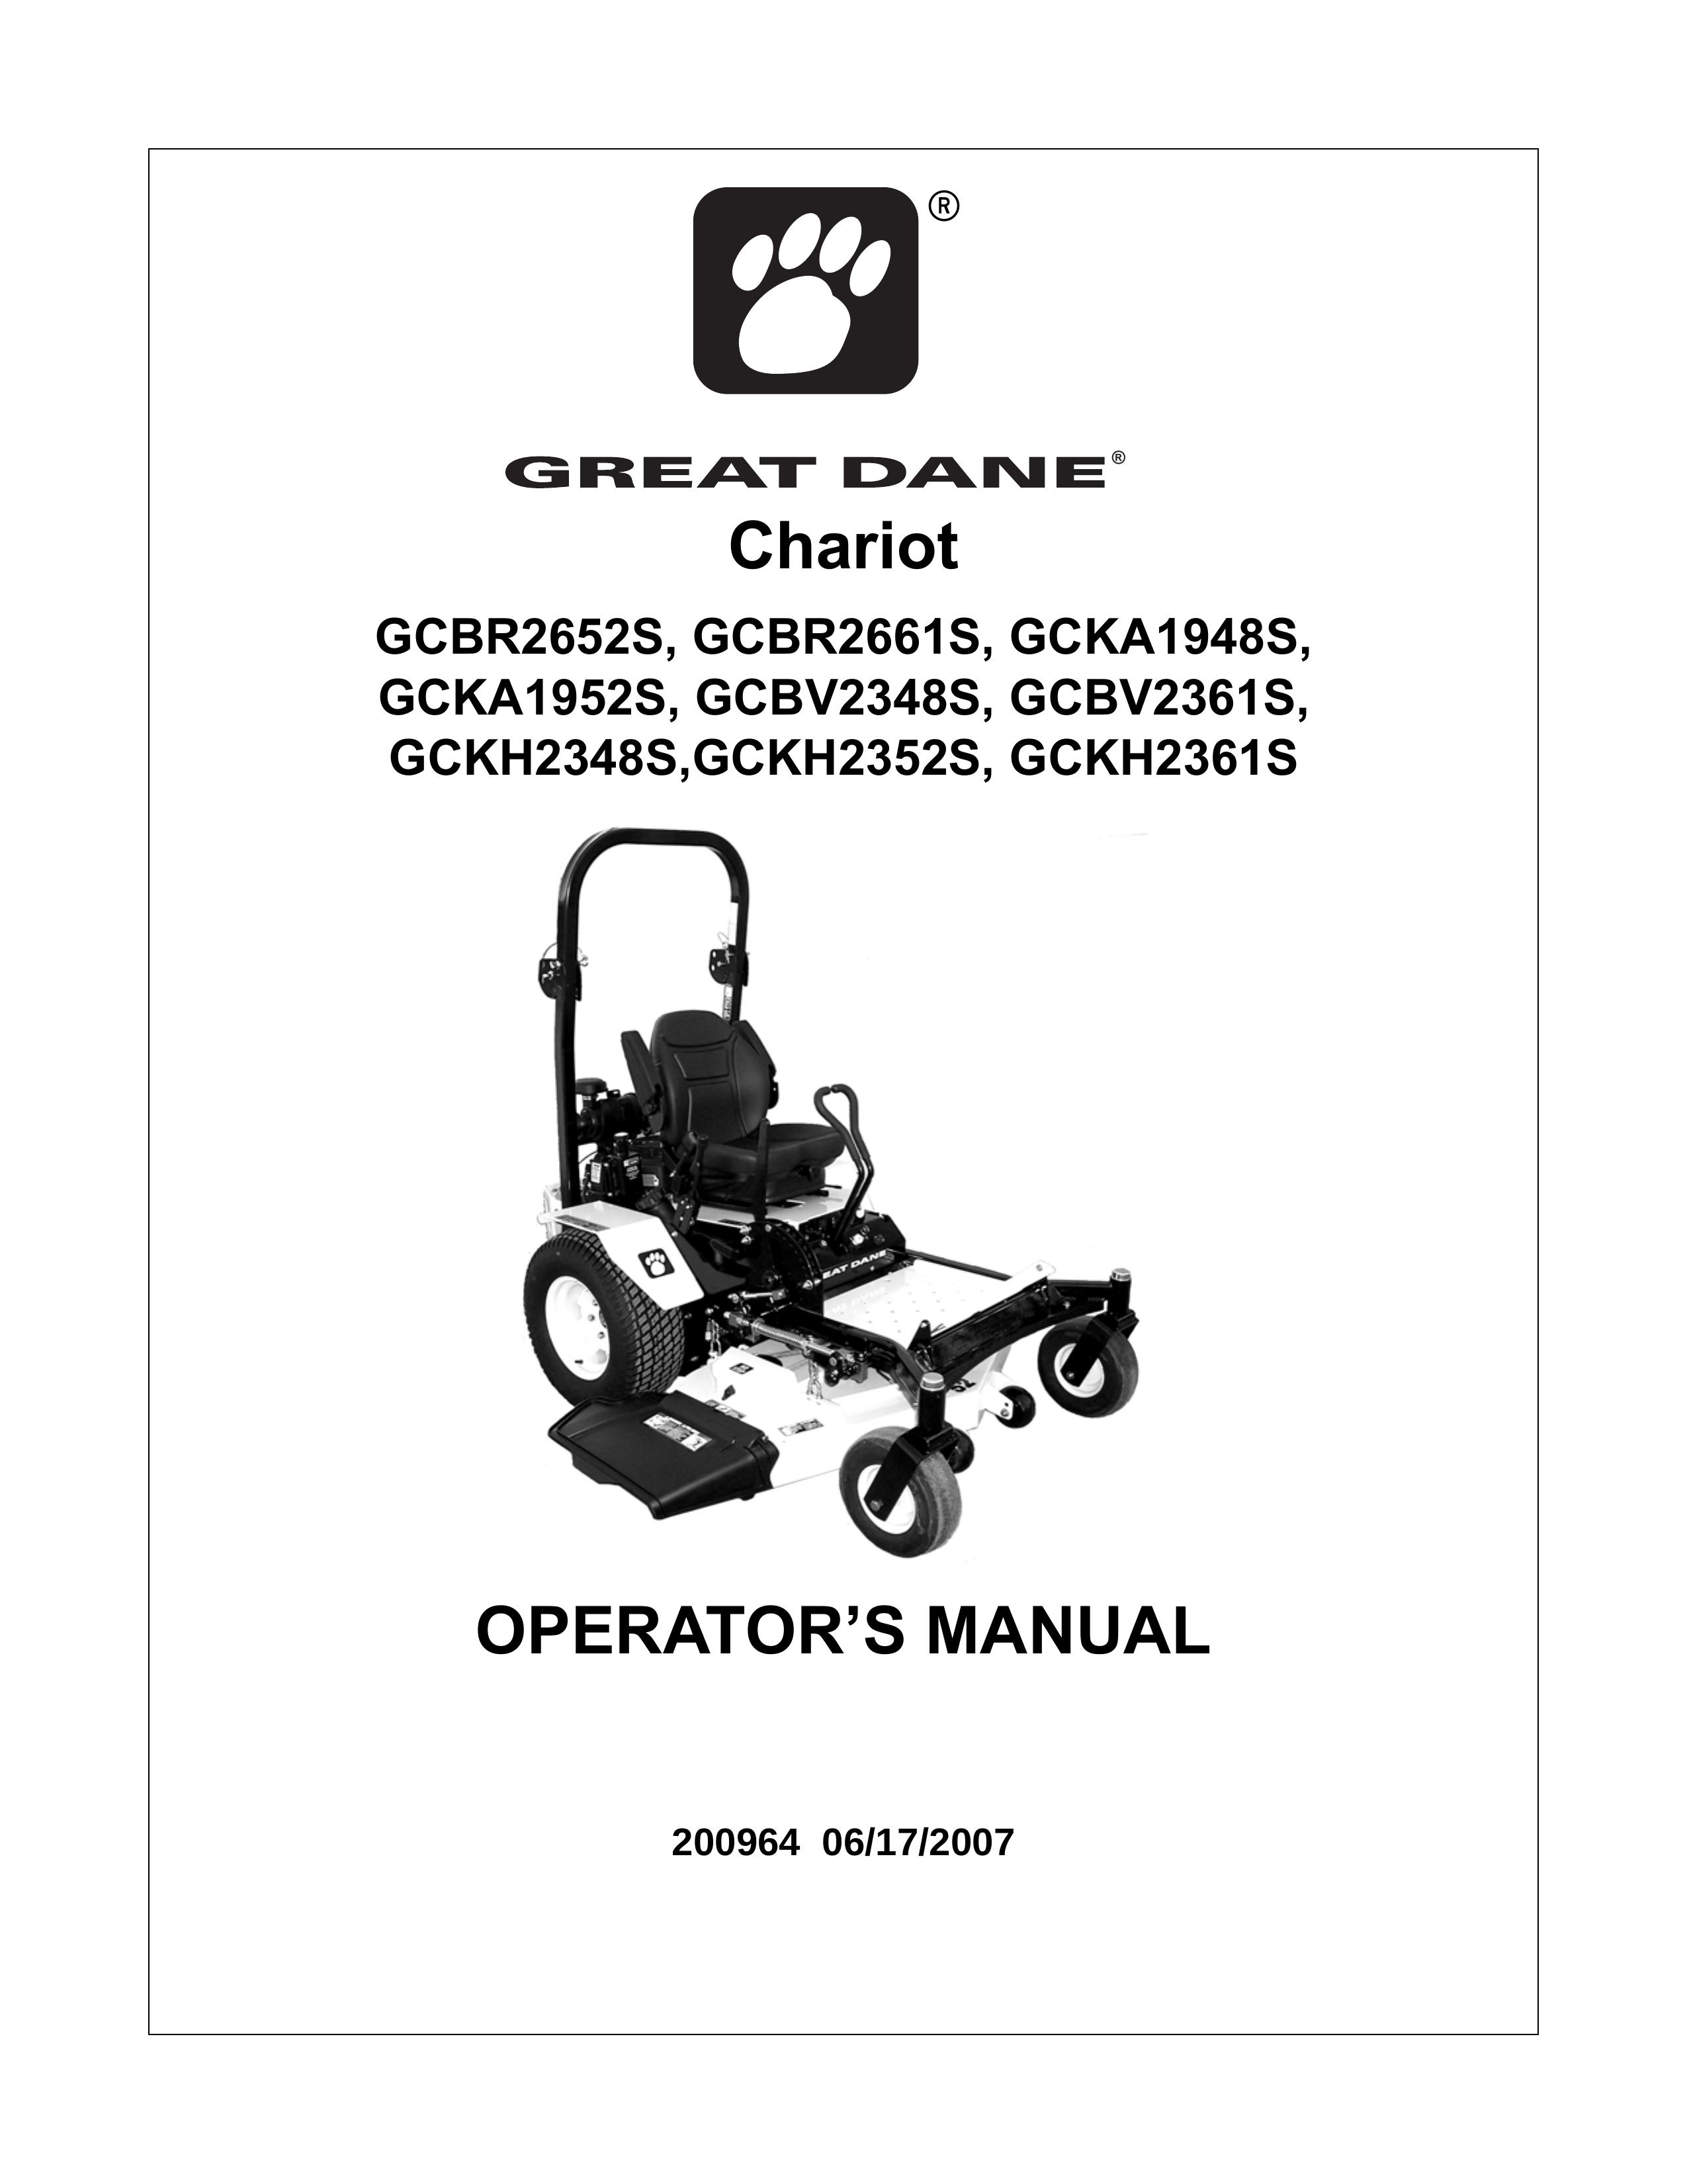 Great Dane GCKH2348S Lawn Mower User Manual